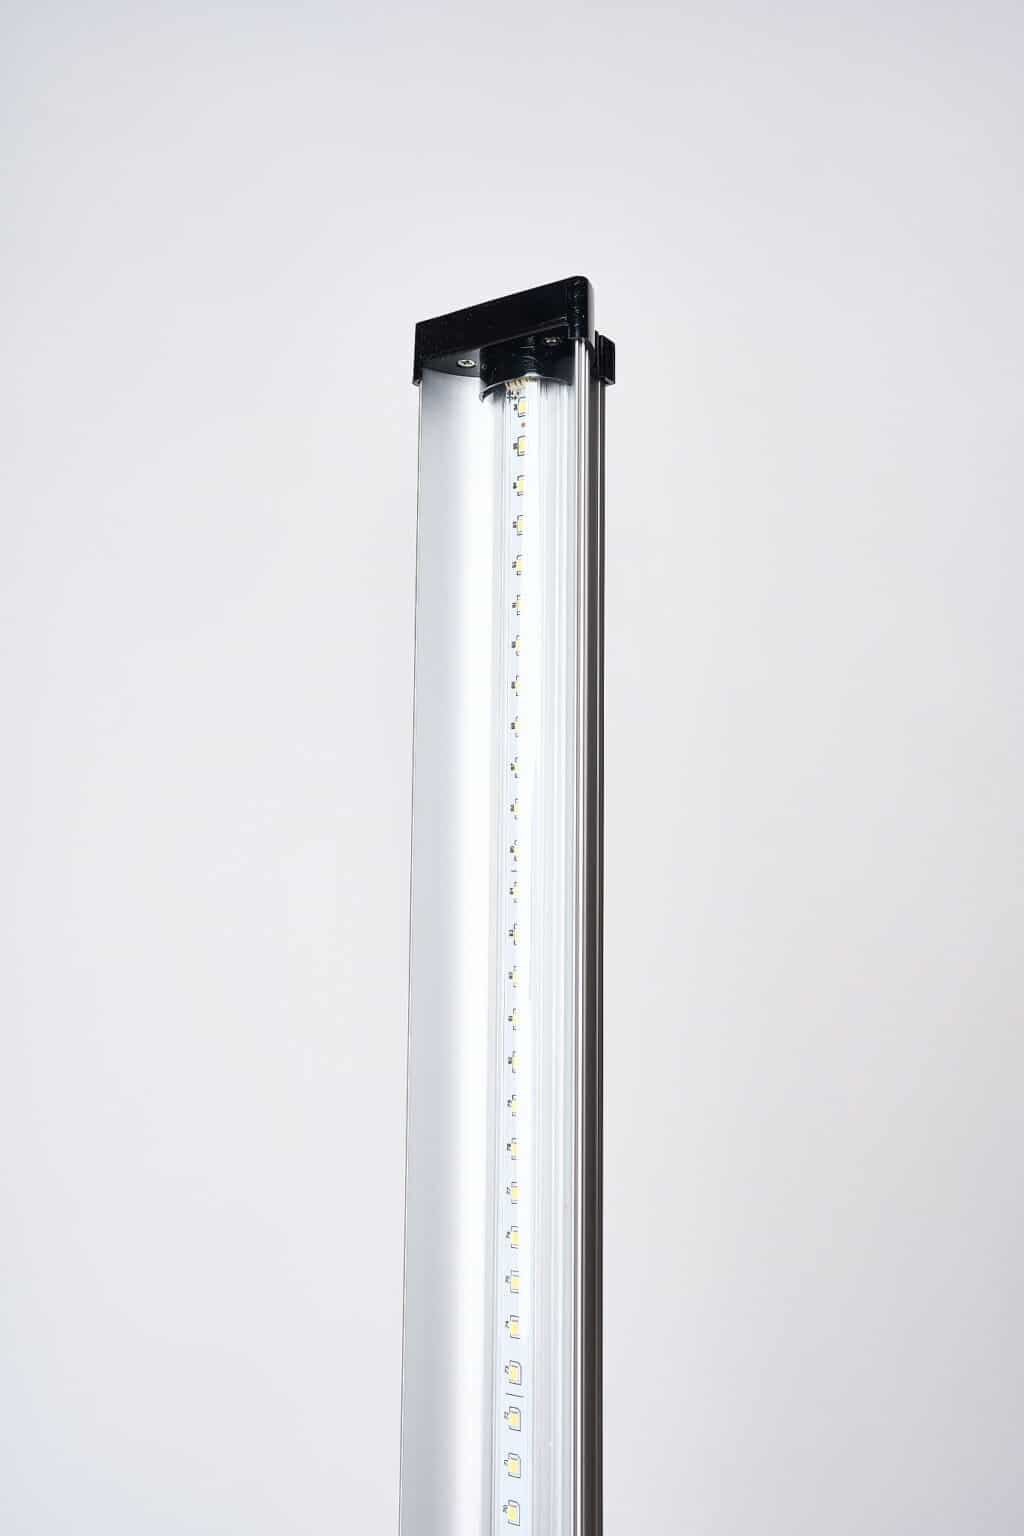 Product Photo of LED light